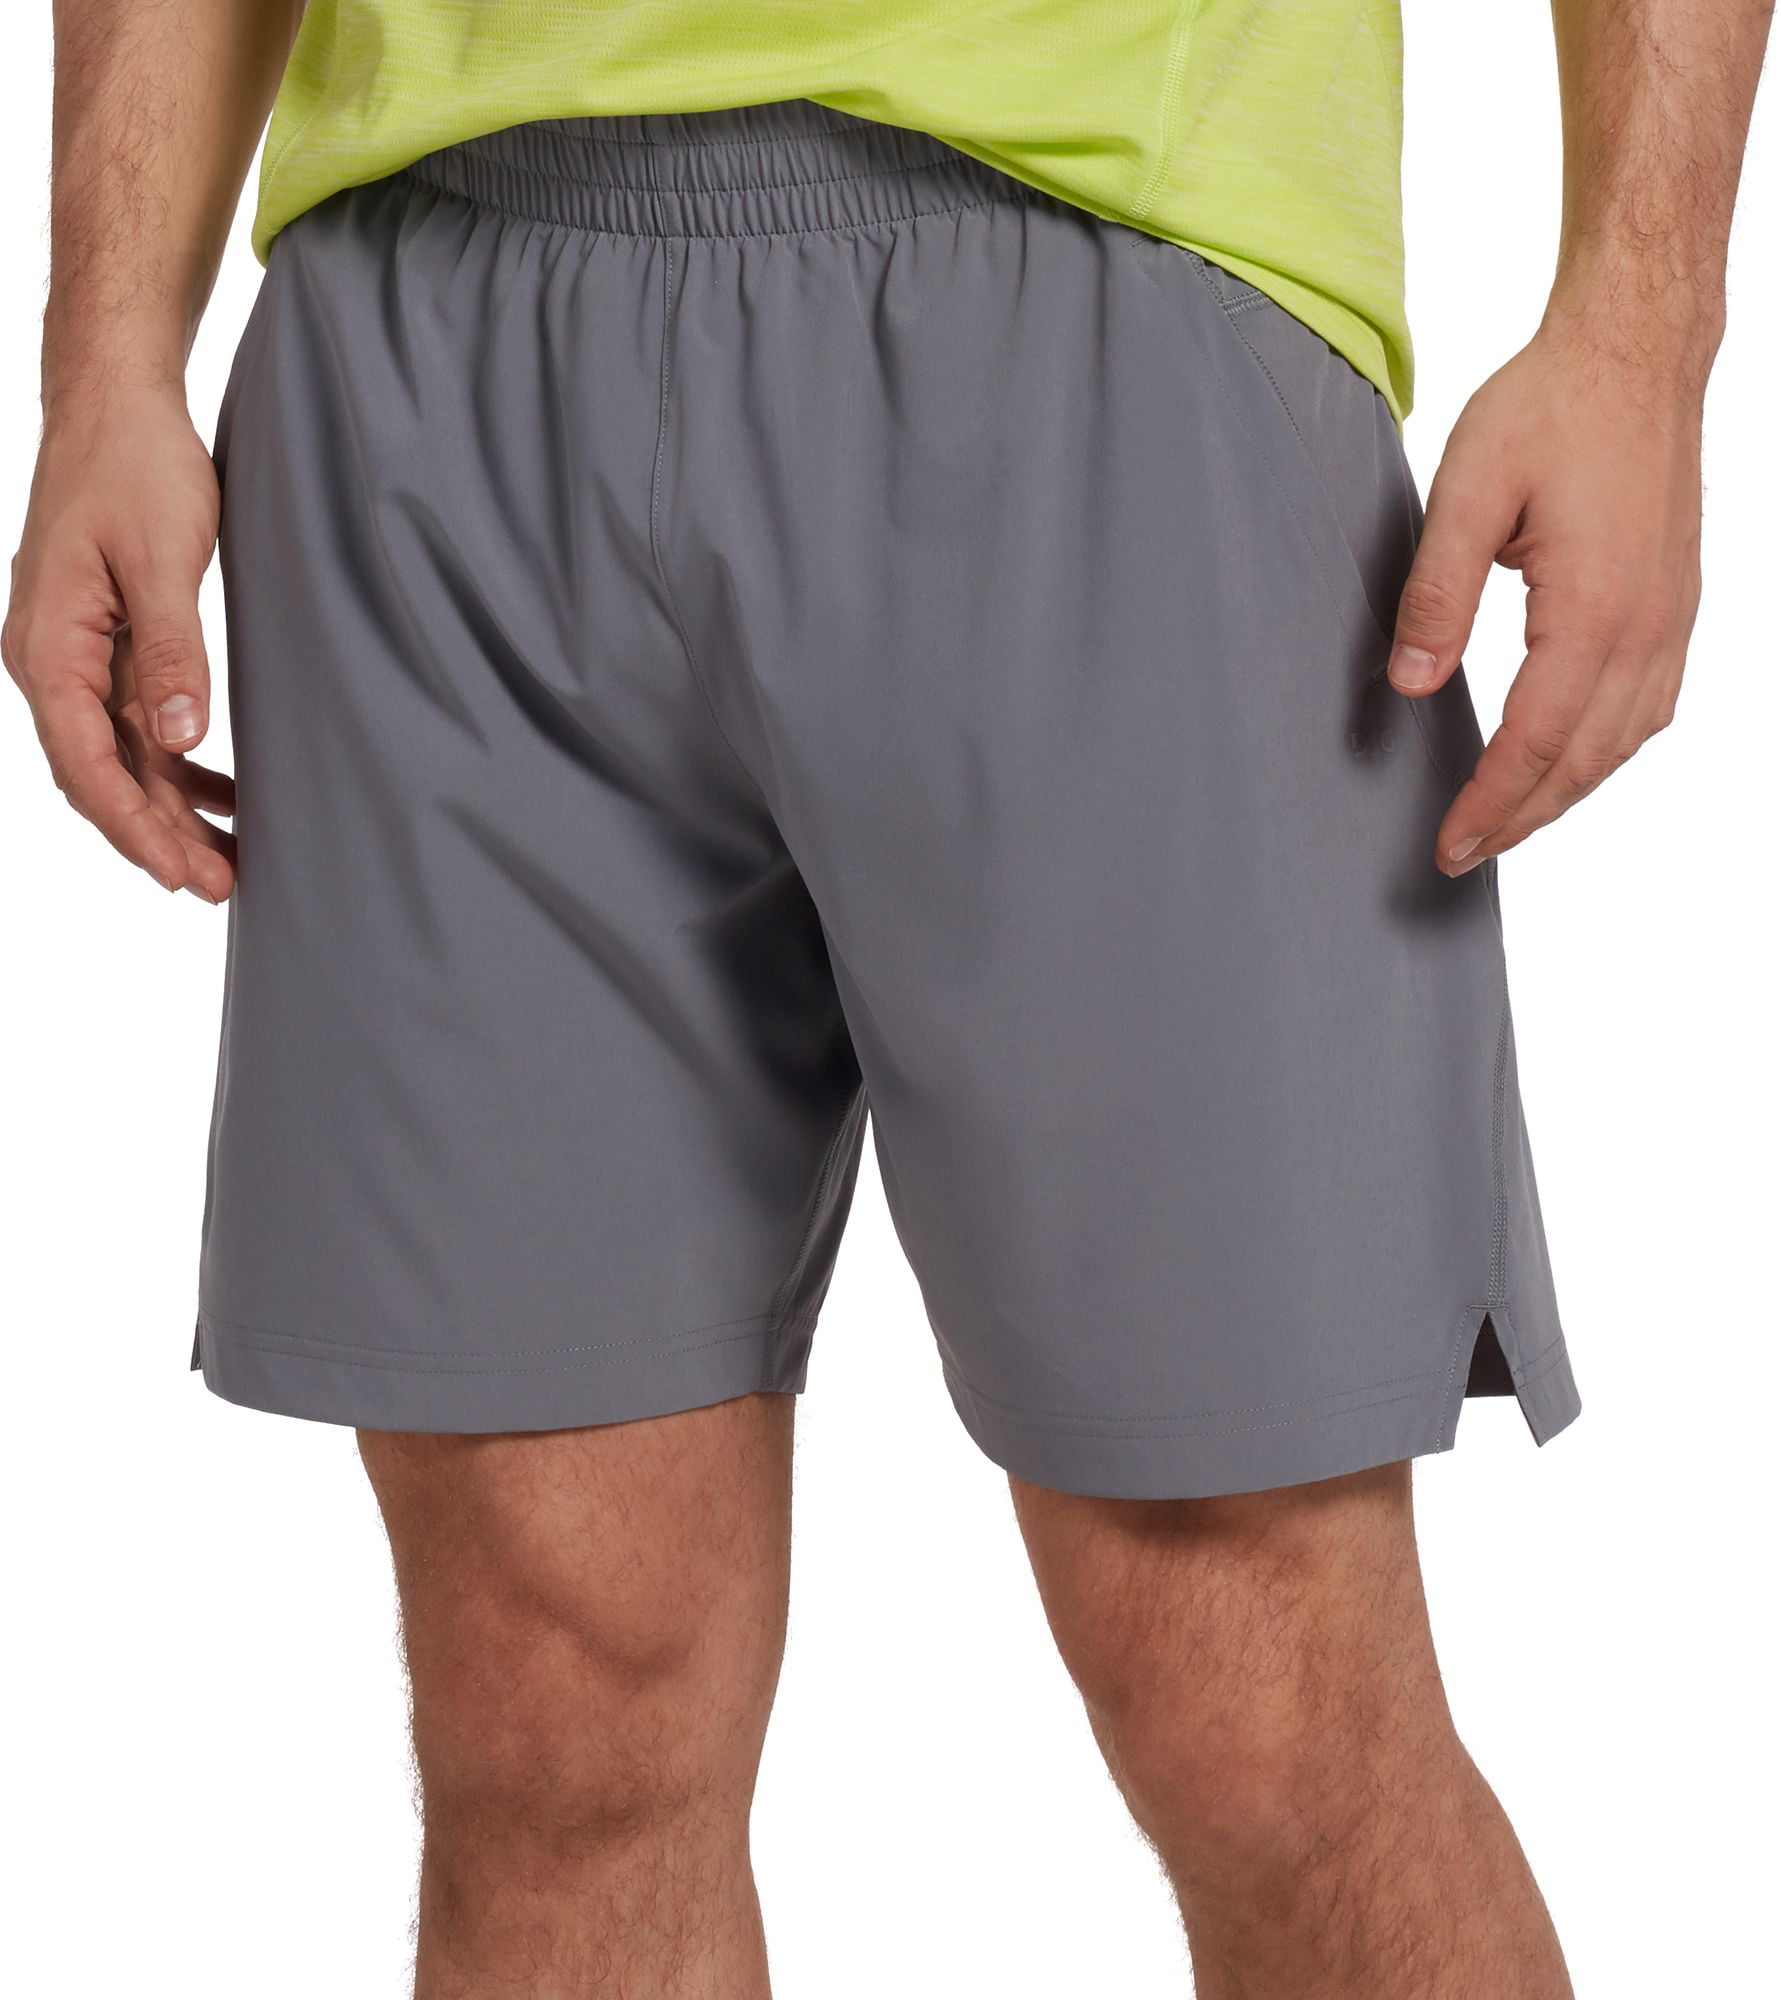 DSG Outerwear - DSG Men's Running Shorts - Walmart.com - Walmart.com